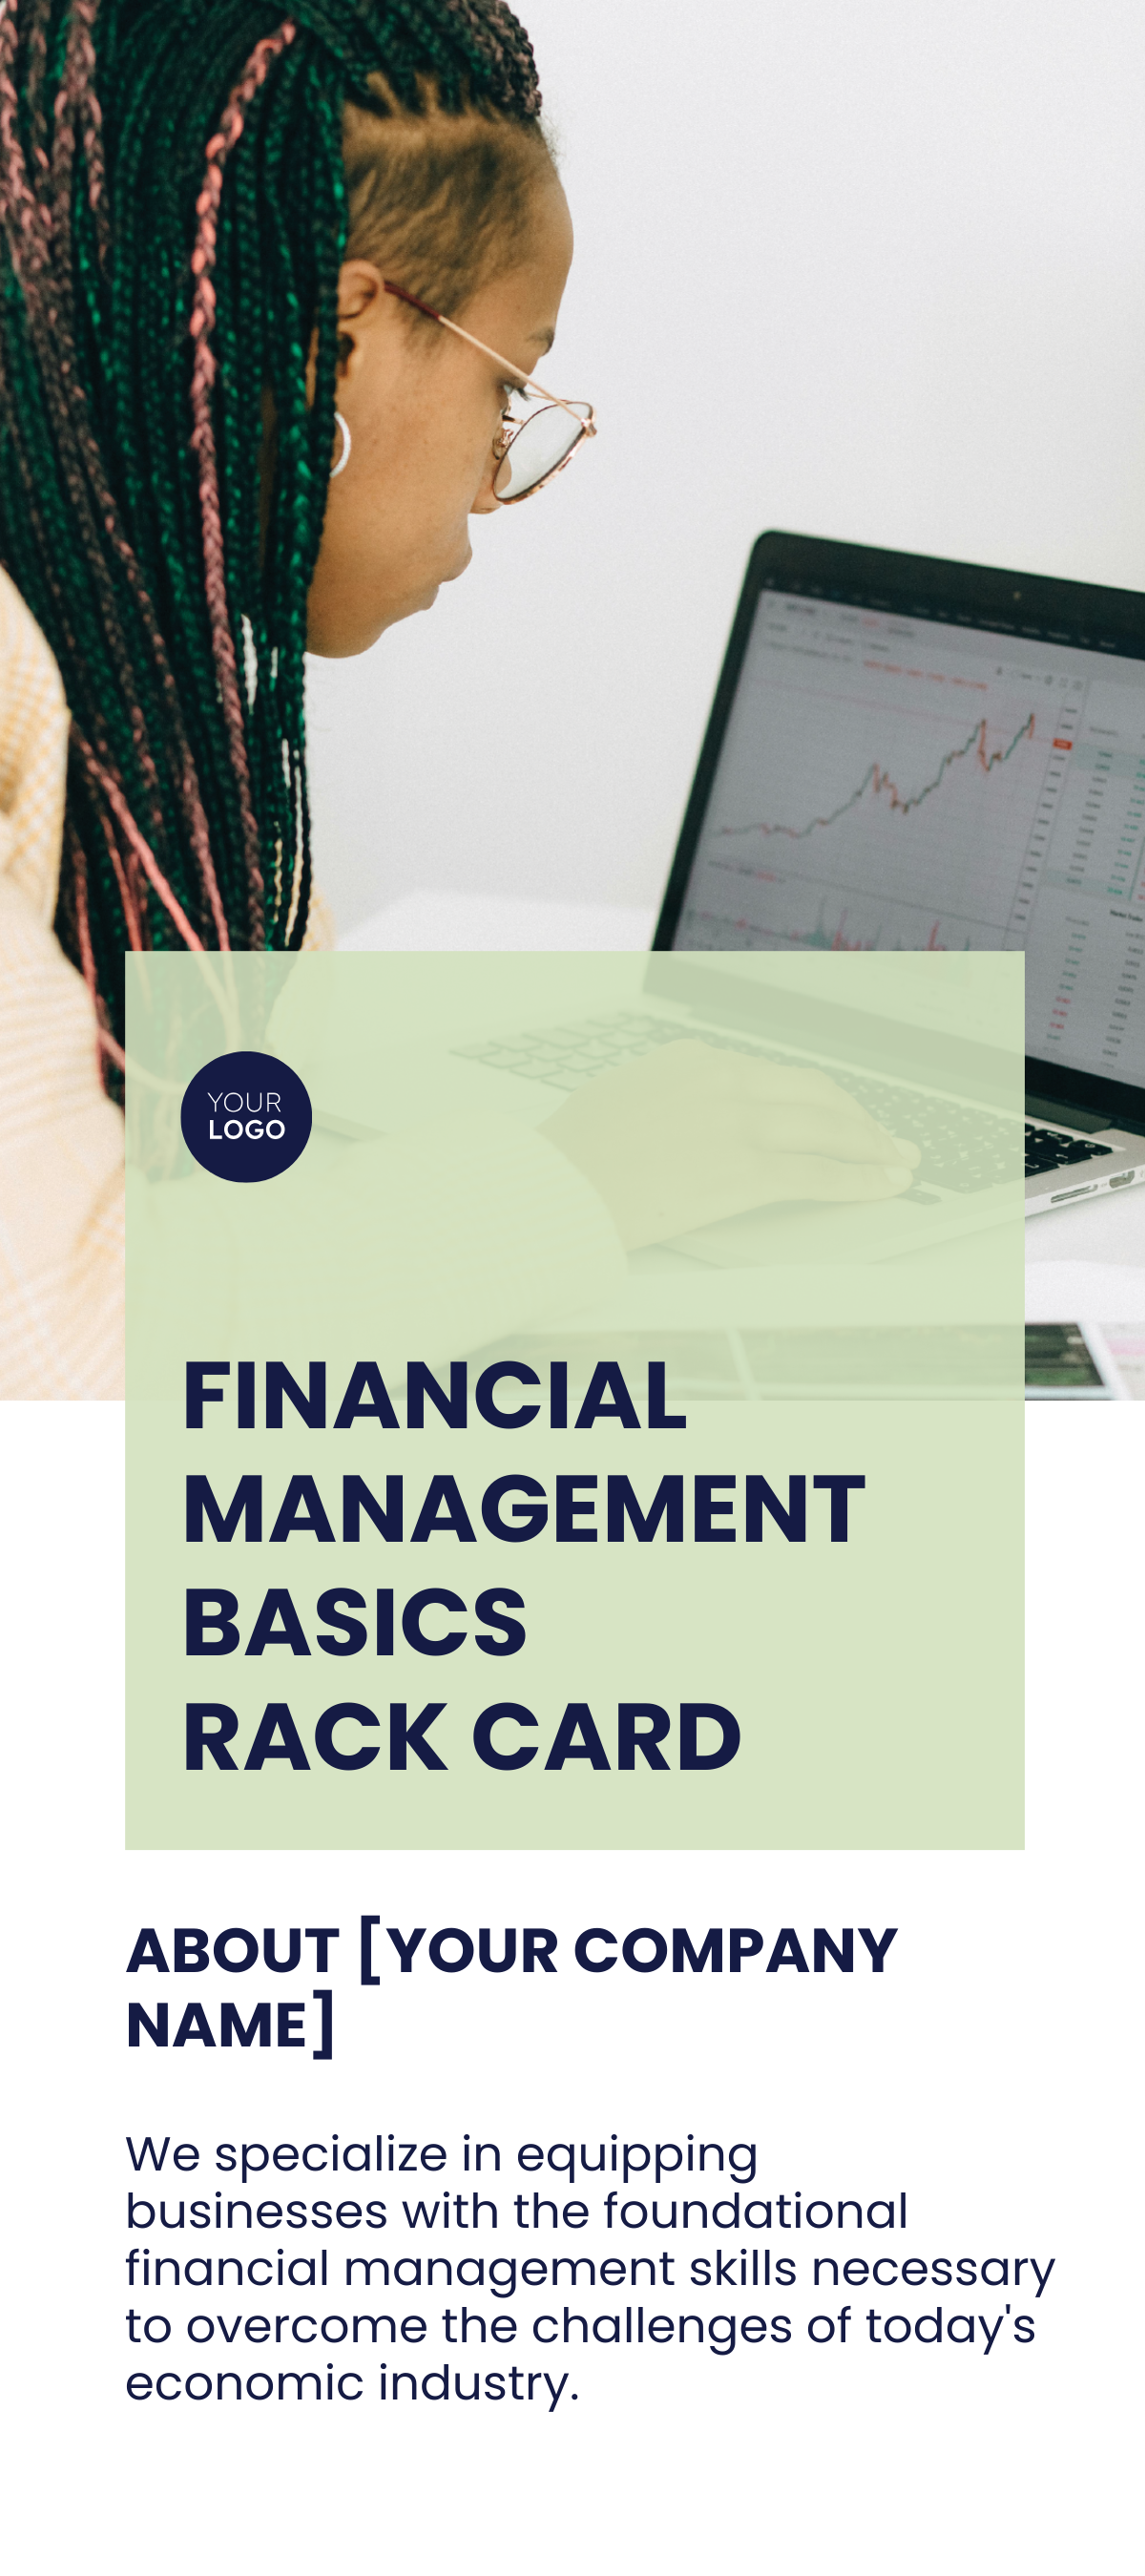 Financial Management Basics Rack Card Template